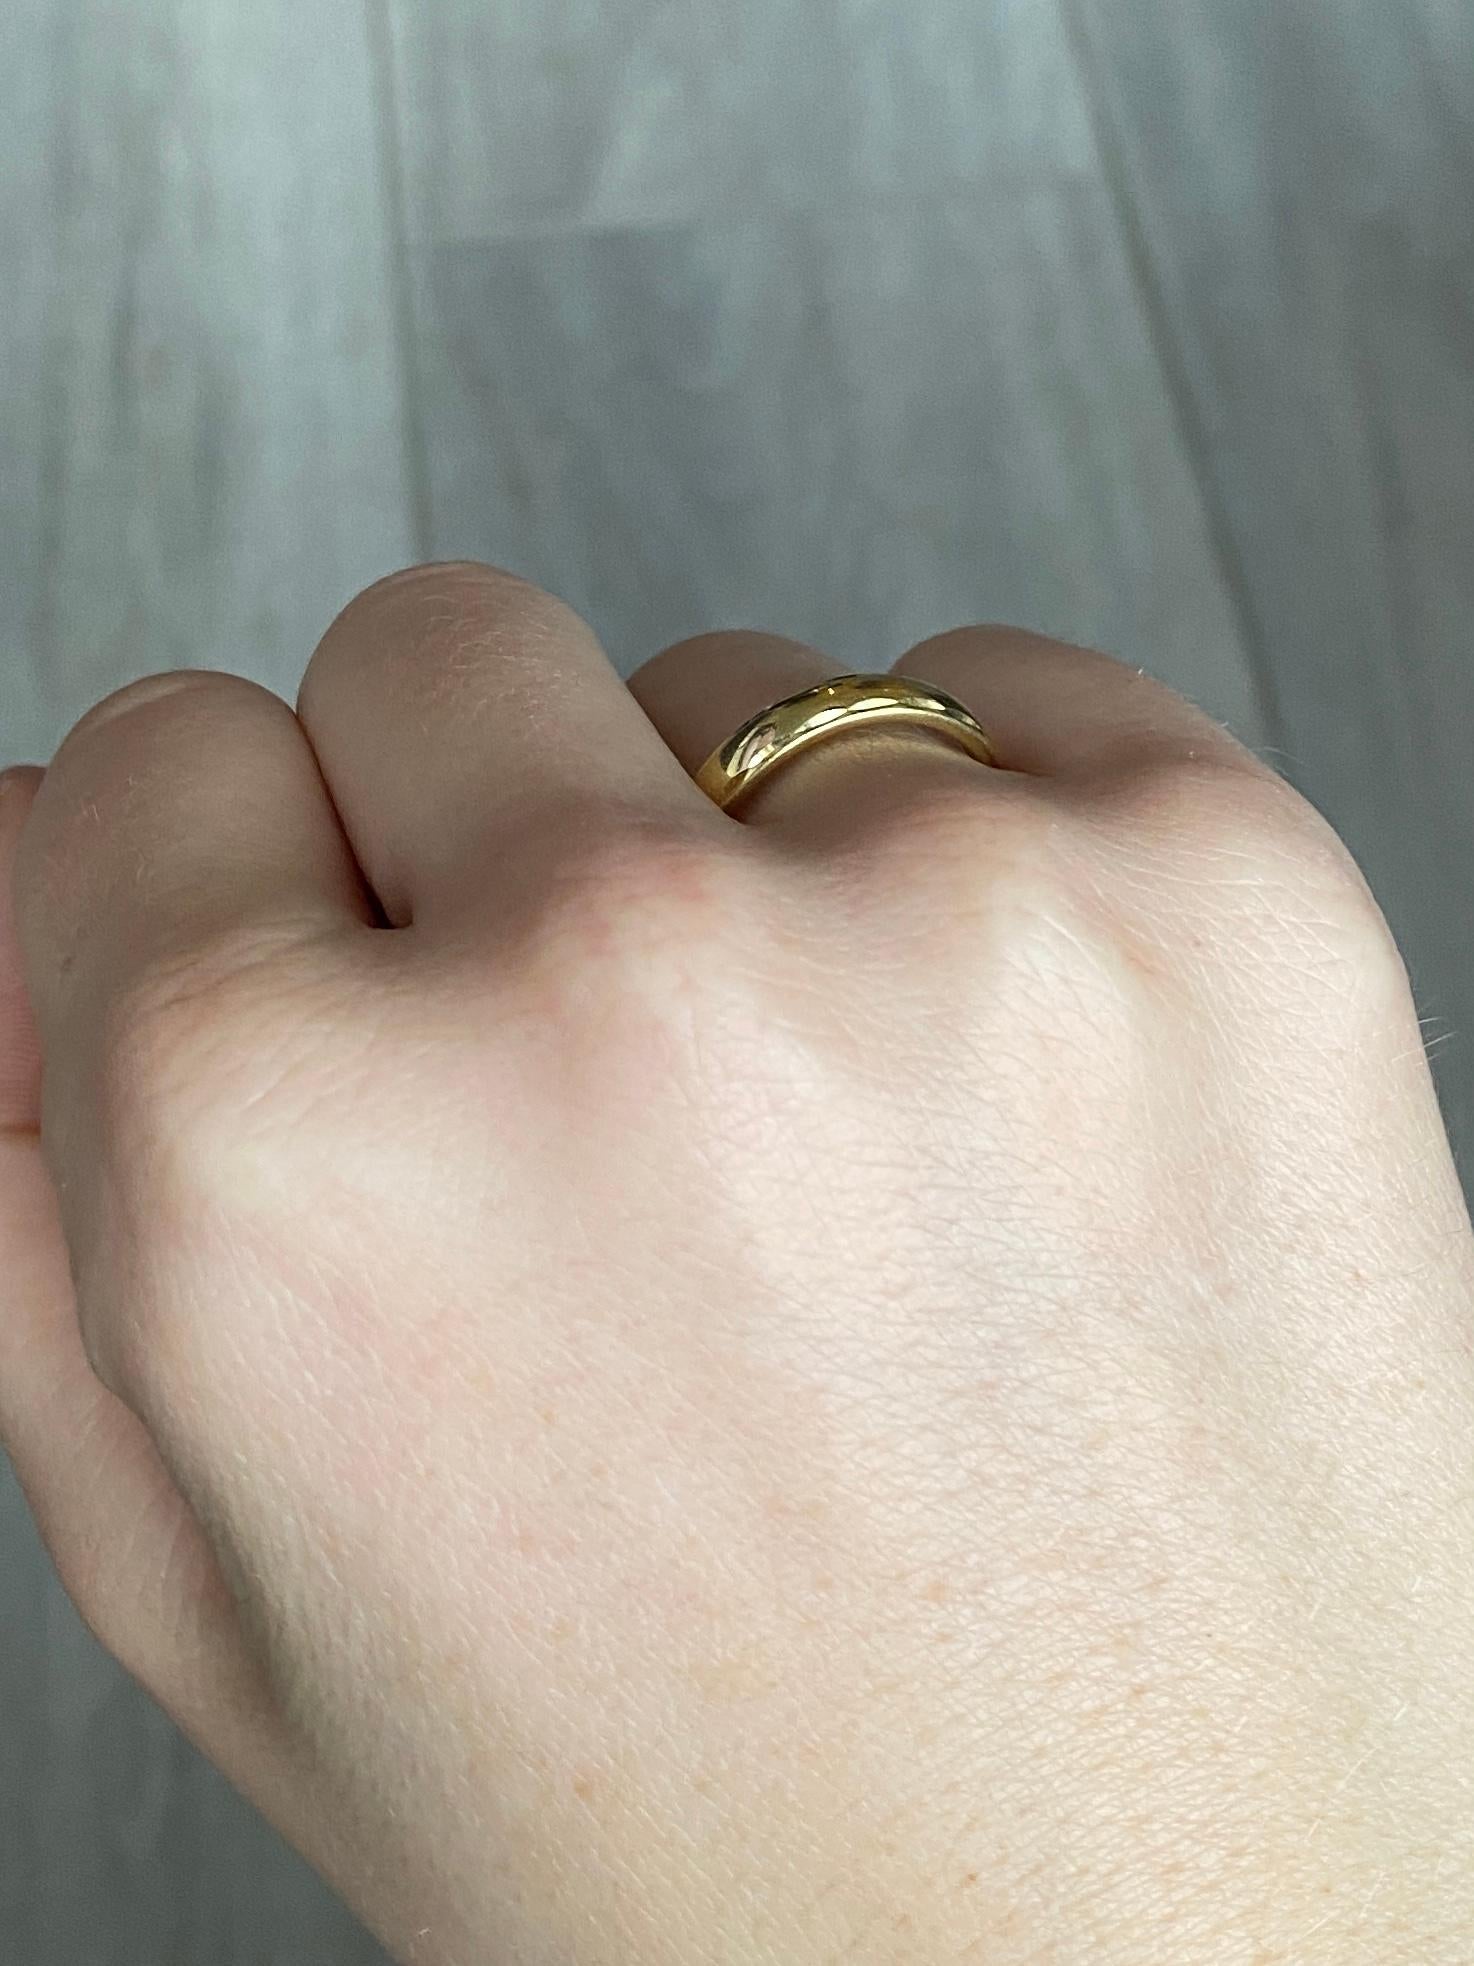 Die Gravur auf diesem 18-karätigen Goldband ist wunderschön. Dieser Ring eignet sich sowohl für die Hochzeit als auch für das tägliche Tragen. Vollständig gestempelt London 2000.

Ring Größe: N oder 6 3/4 
Breite des Bandes: 4,5 mm

Gewicht: 5,3 g